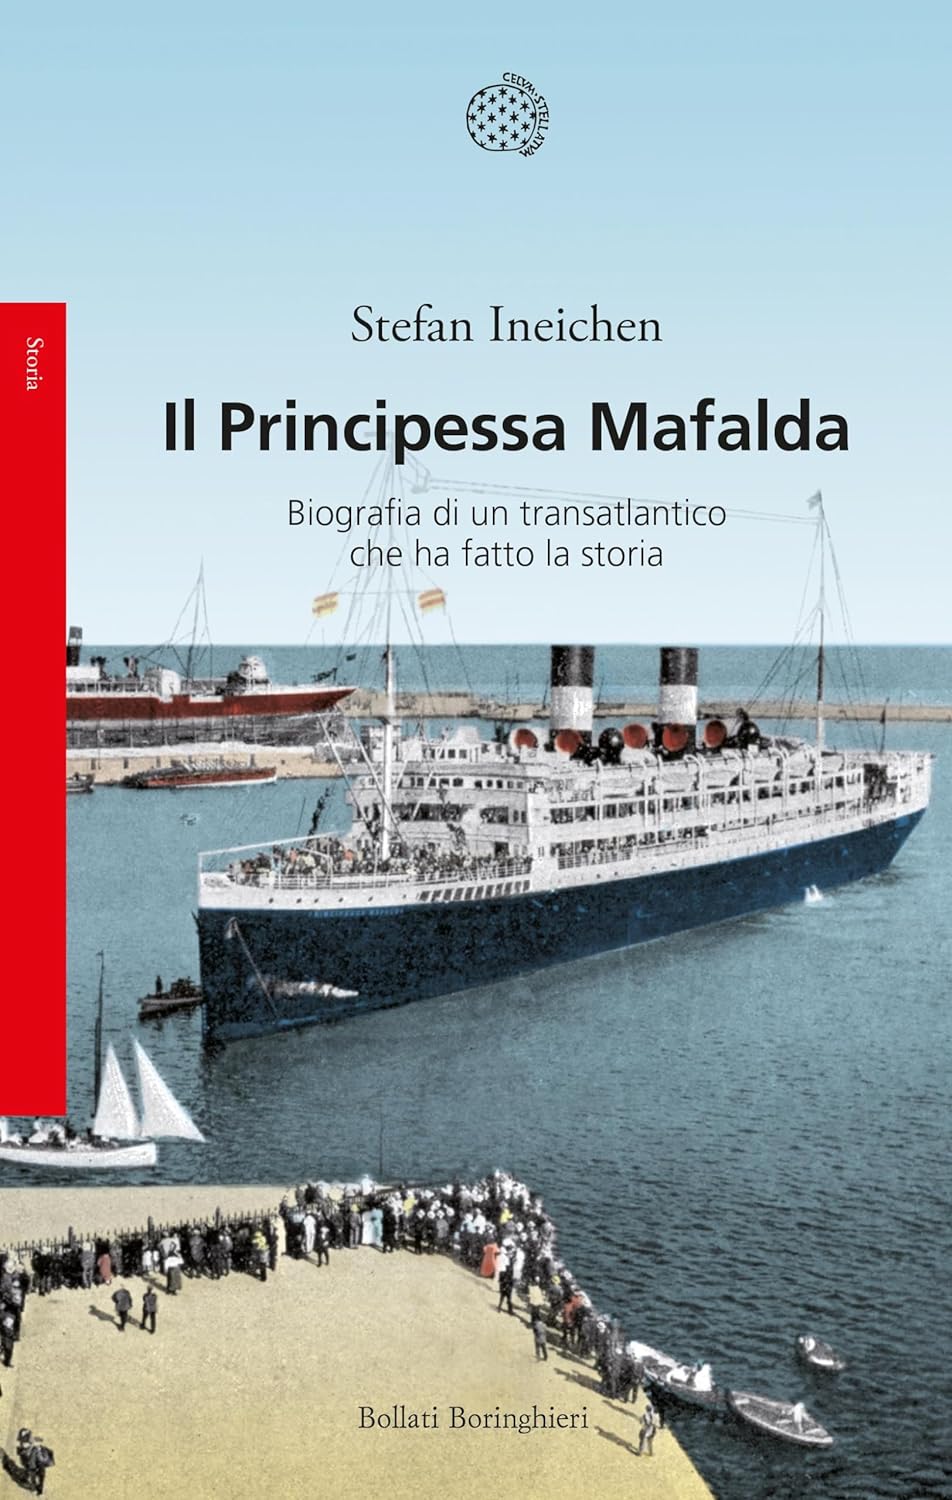 Il Principessa Mafalda di Stefan Ineichen – Recensione